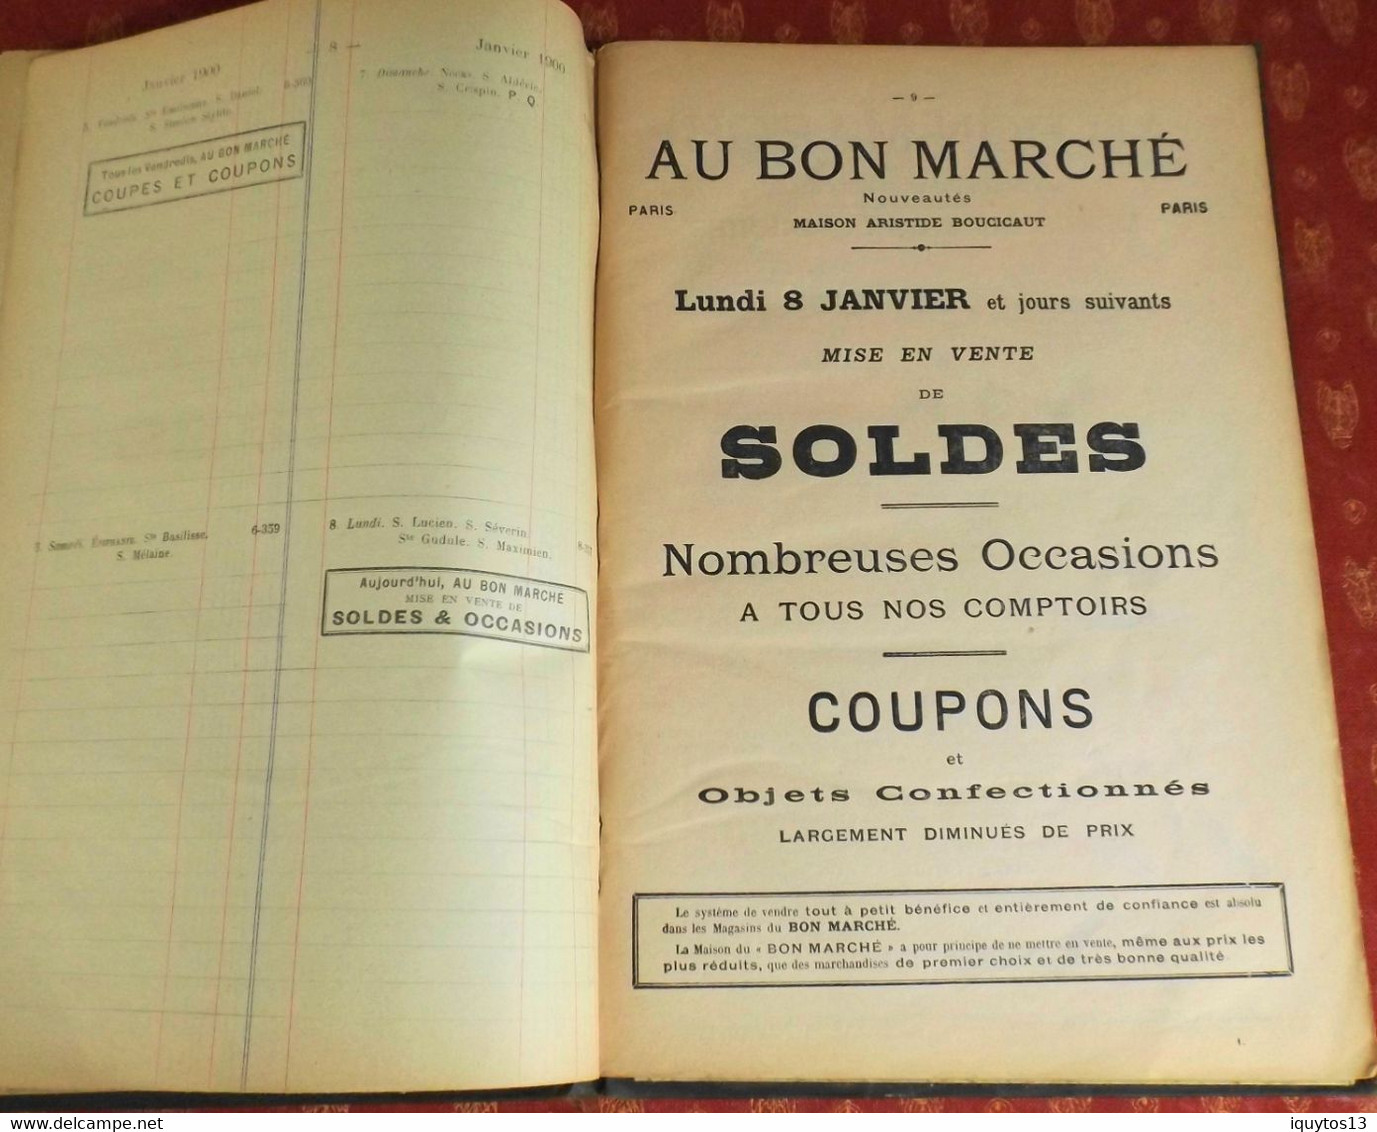 LE BON MARCHE -  Agenda-Buvard du bon marché 1900 - Plan de Paris à Ruban en BE